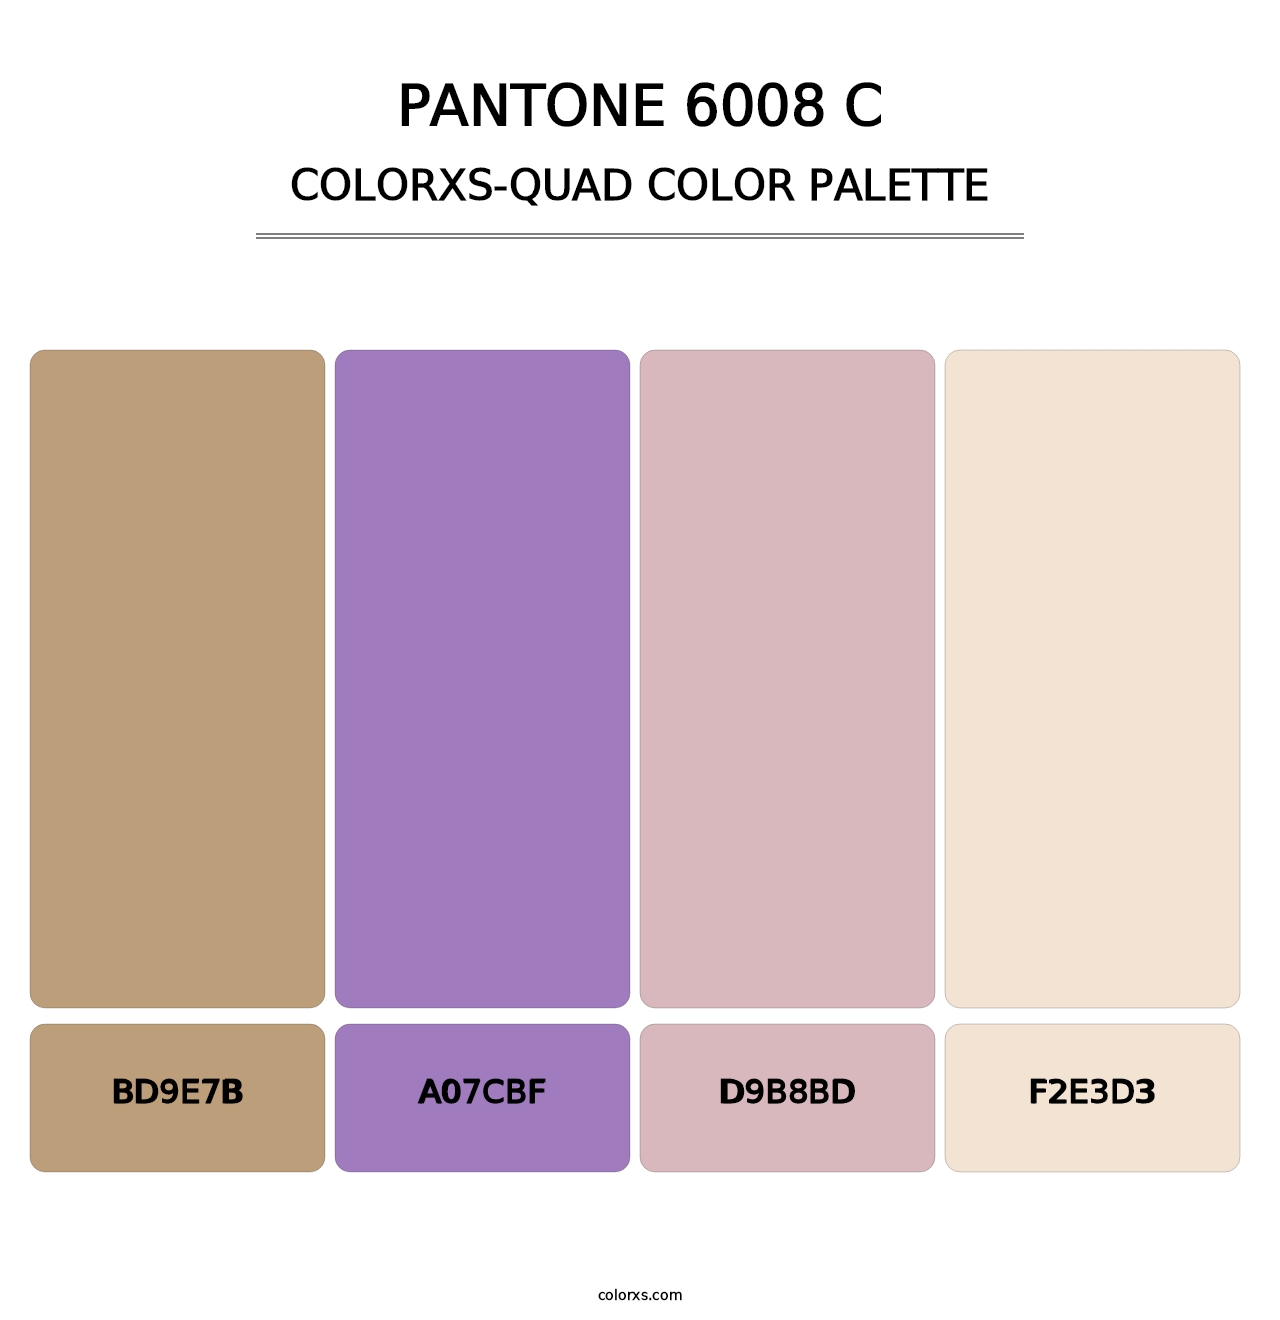 PANTONE 6008 C - Colorxs Quad Palette